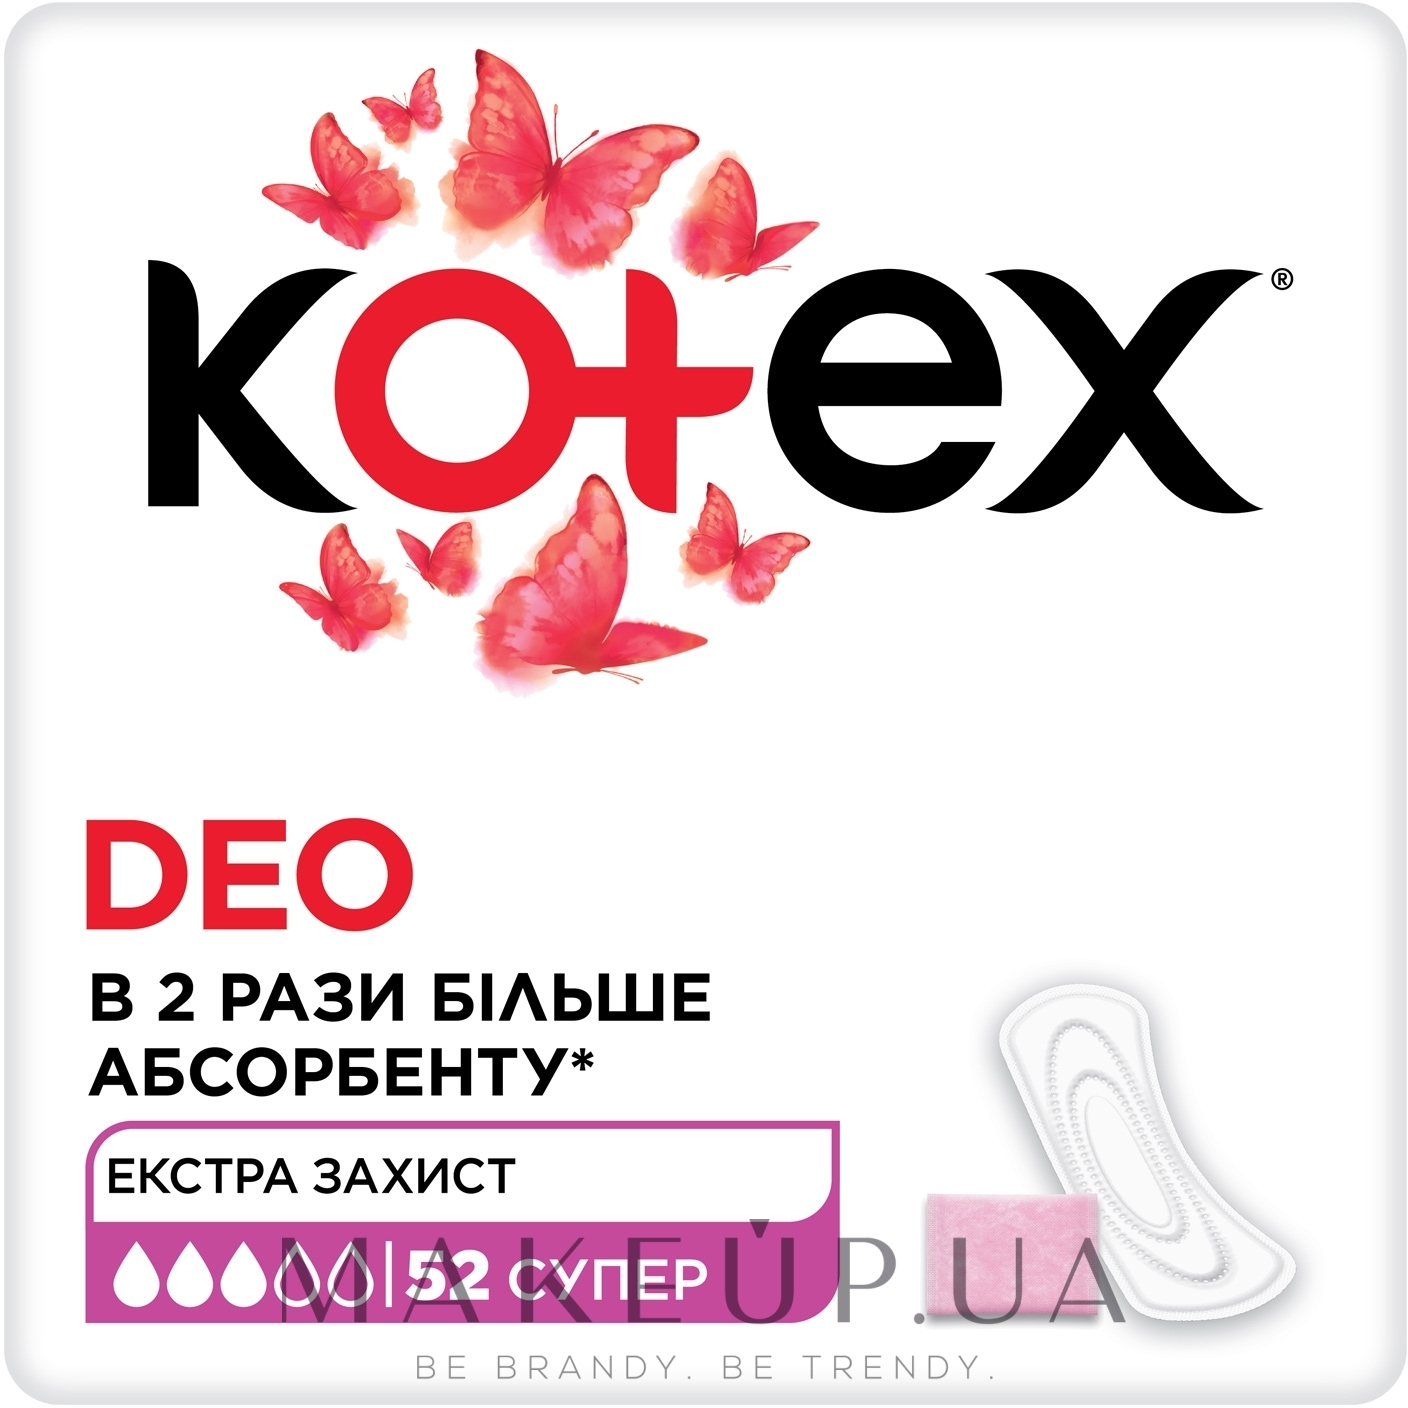 Ежедневные гигиенические прокладки, 52 шт - Kotex Super Deo — фото 52шт